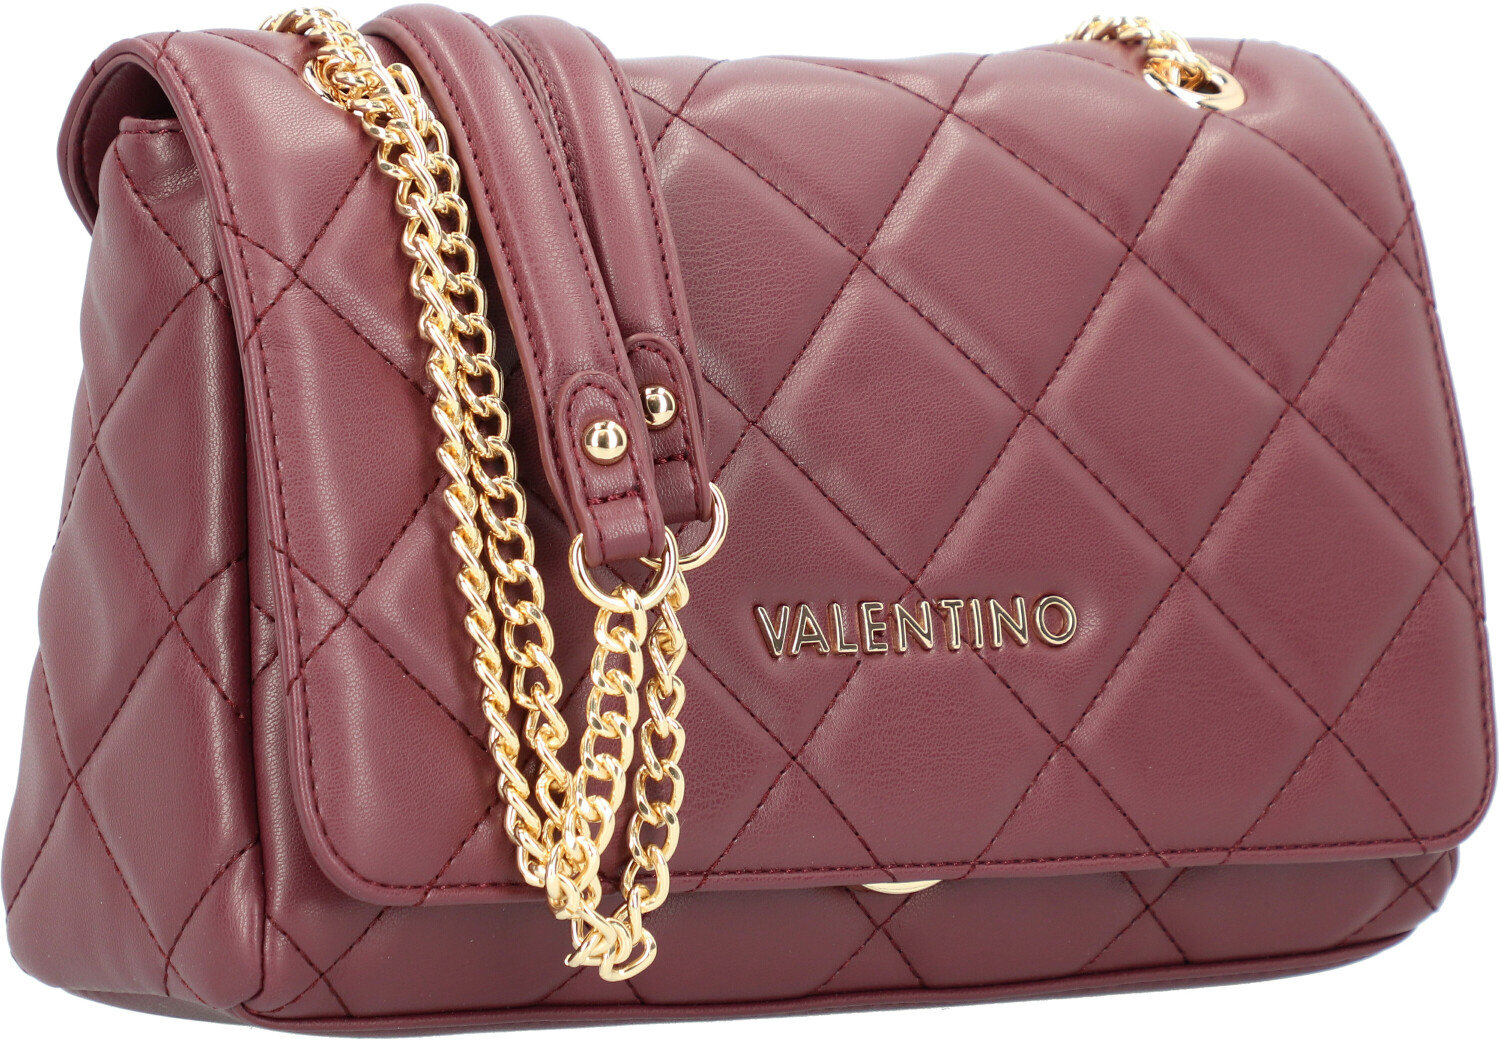 Valentino Bags Ocarina Black Shoulder Bag VBS3KK02NERO - Bags